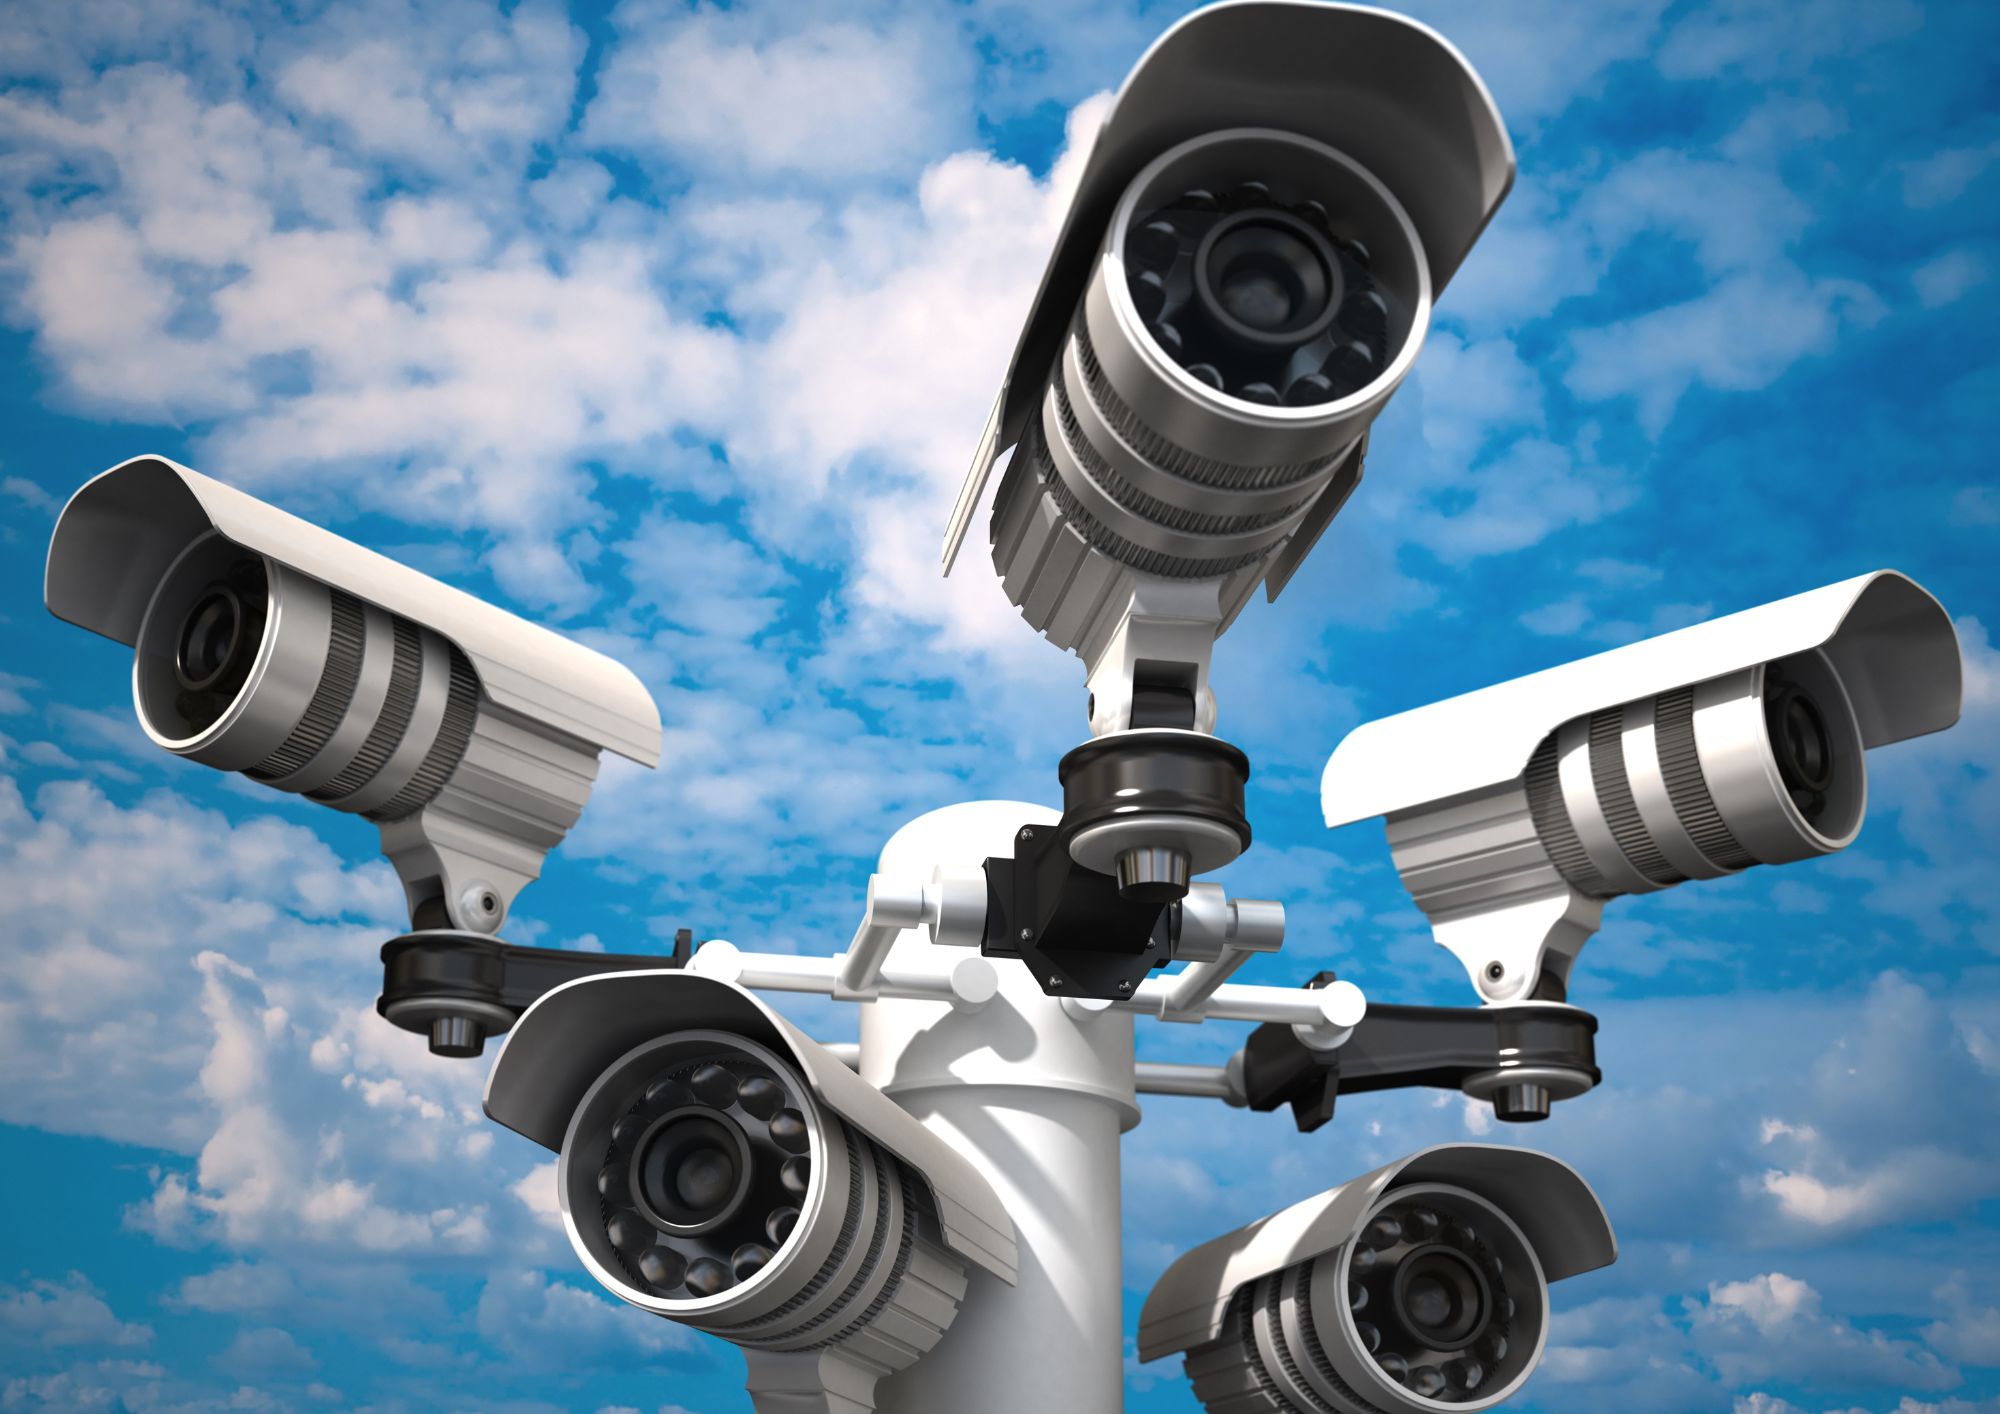 Tendencias tecnológicas en cámaras de seguridad: analiza las últimas innovaciones